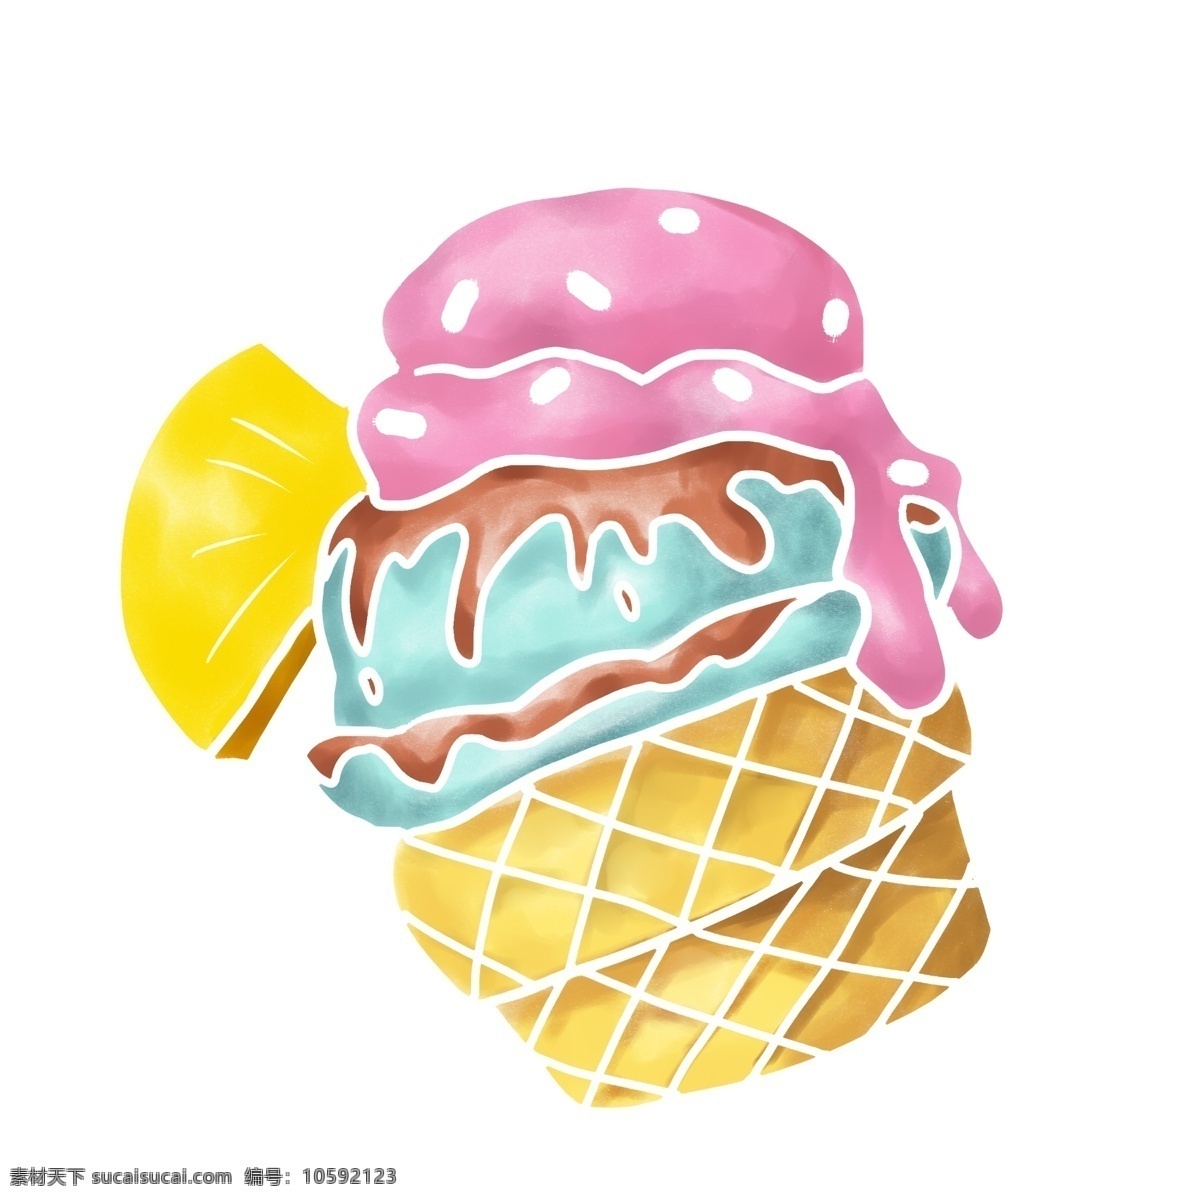 美味 小吃 冰淇淋 插画 美味的小吃 卡通插画 小吃插画 美食插画 食物插画 食品插画 冰淇淋小吃